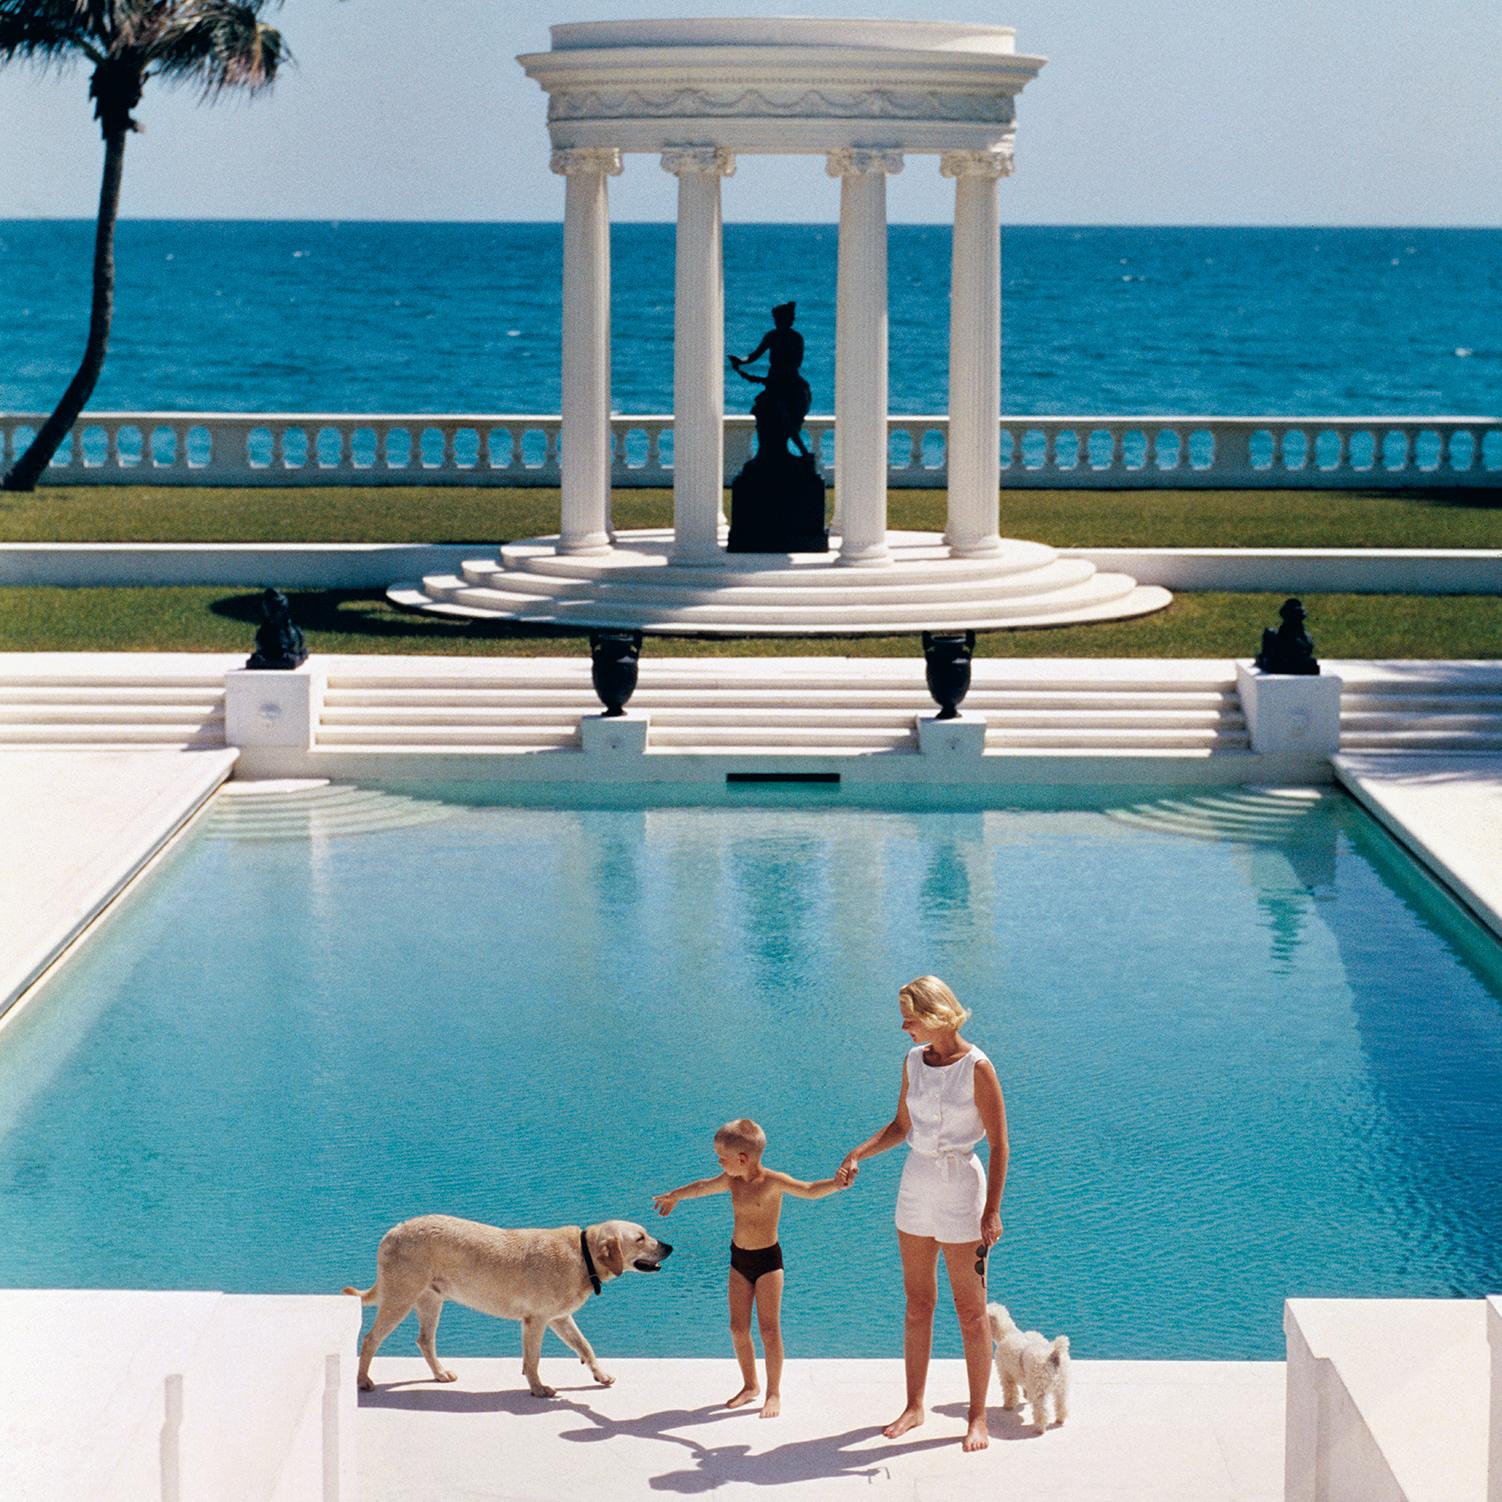 Amerikanischer Schriftsteller C.Z. Gast (Frau F.C. Winston Guest, 1920 - 2003) und ihr Sohn Alexander Michael Douglas Dudley Guest vor ihrem griechischen Tempelpool auf dem am Meer gelegenen Anwesen Villa Artemis in Palm Beach.

40 x 40